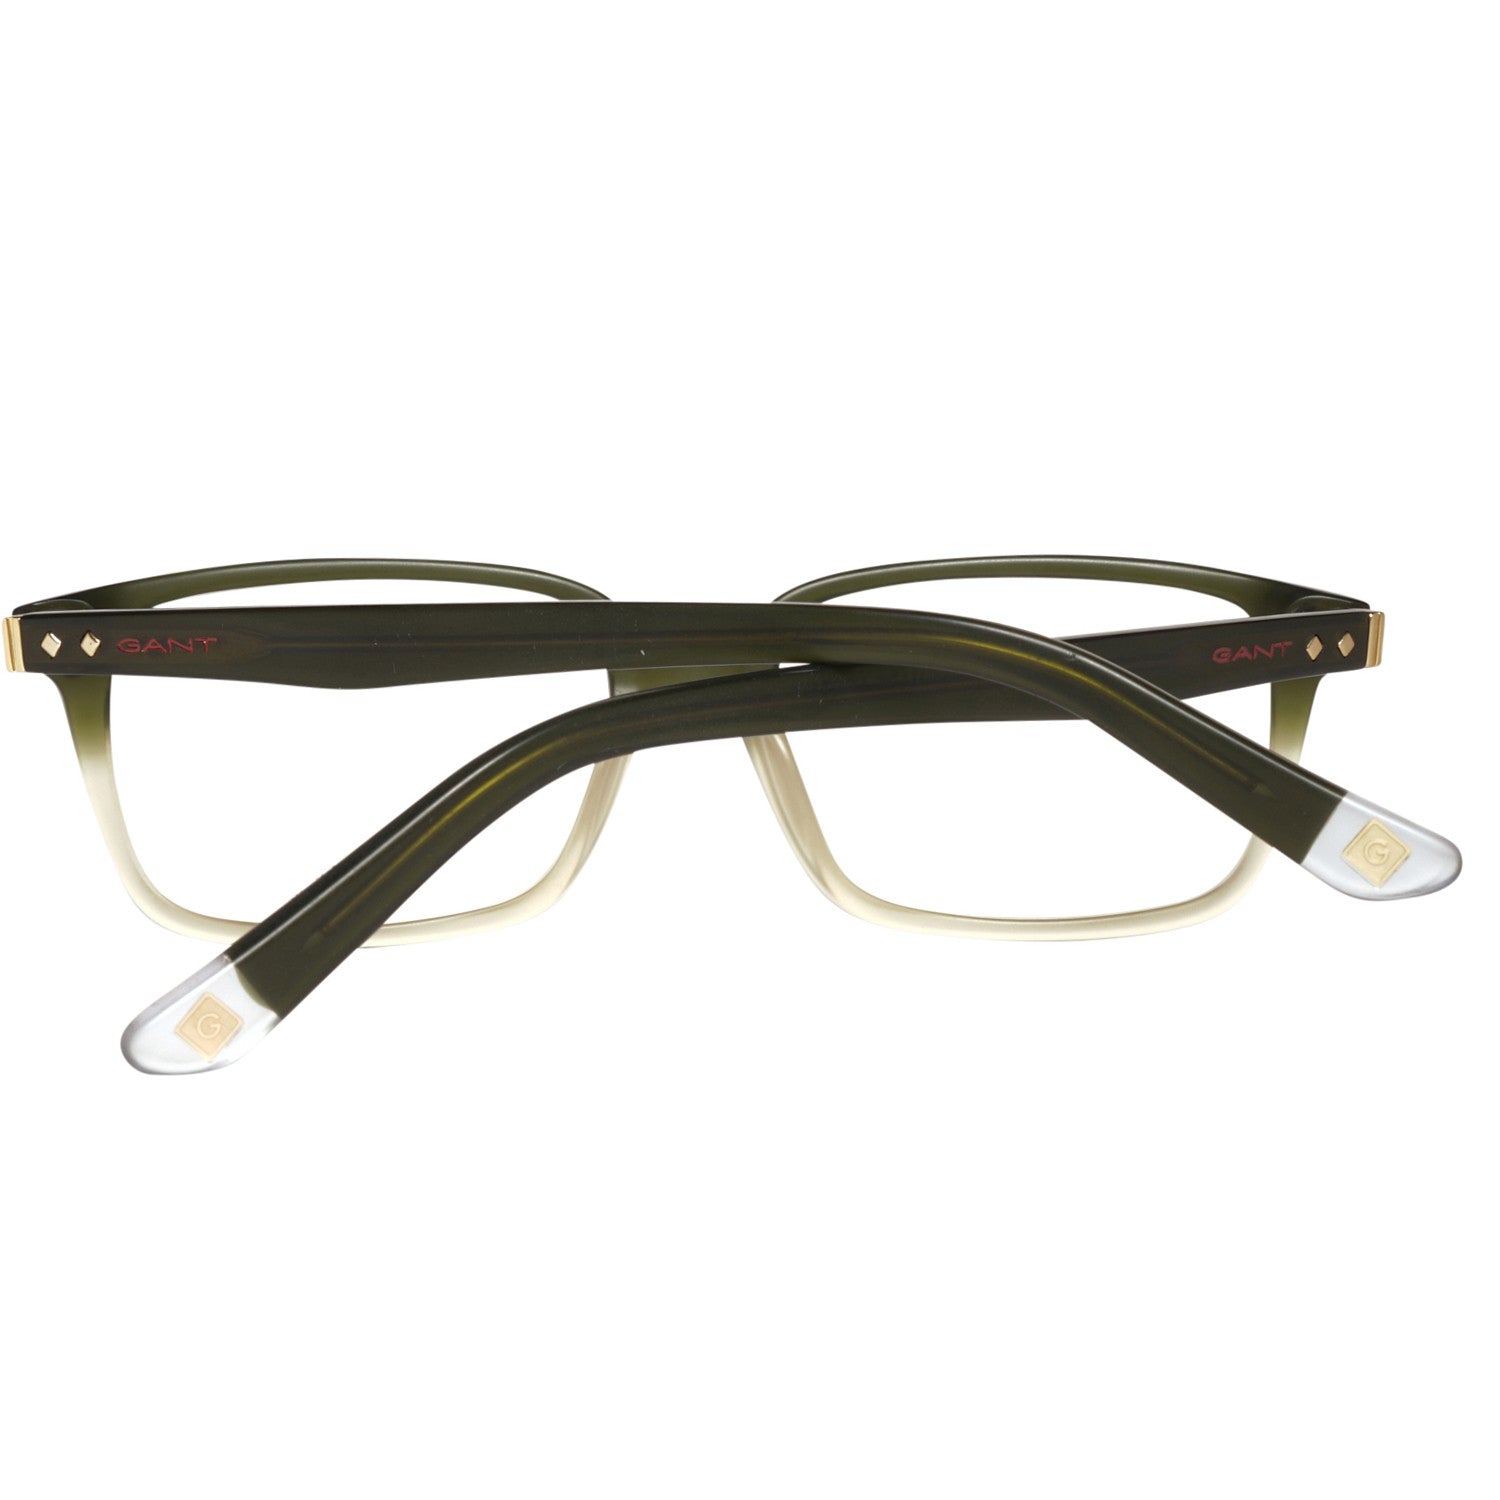 Gant Frames Gant Glasses Frames GRA105 L82 53 | GR 5009 MOL 53 Eyeglasses Eyewear UK USA Australia 